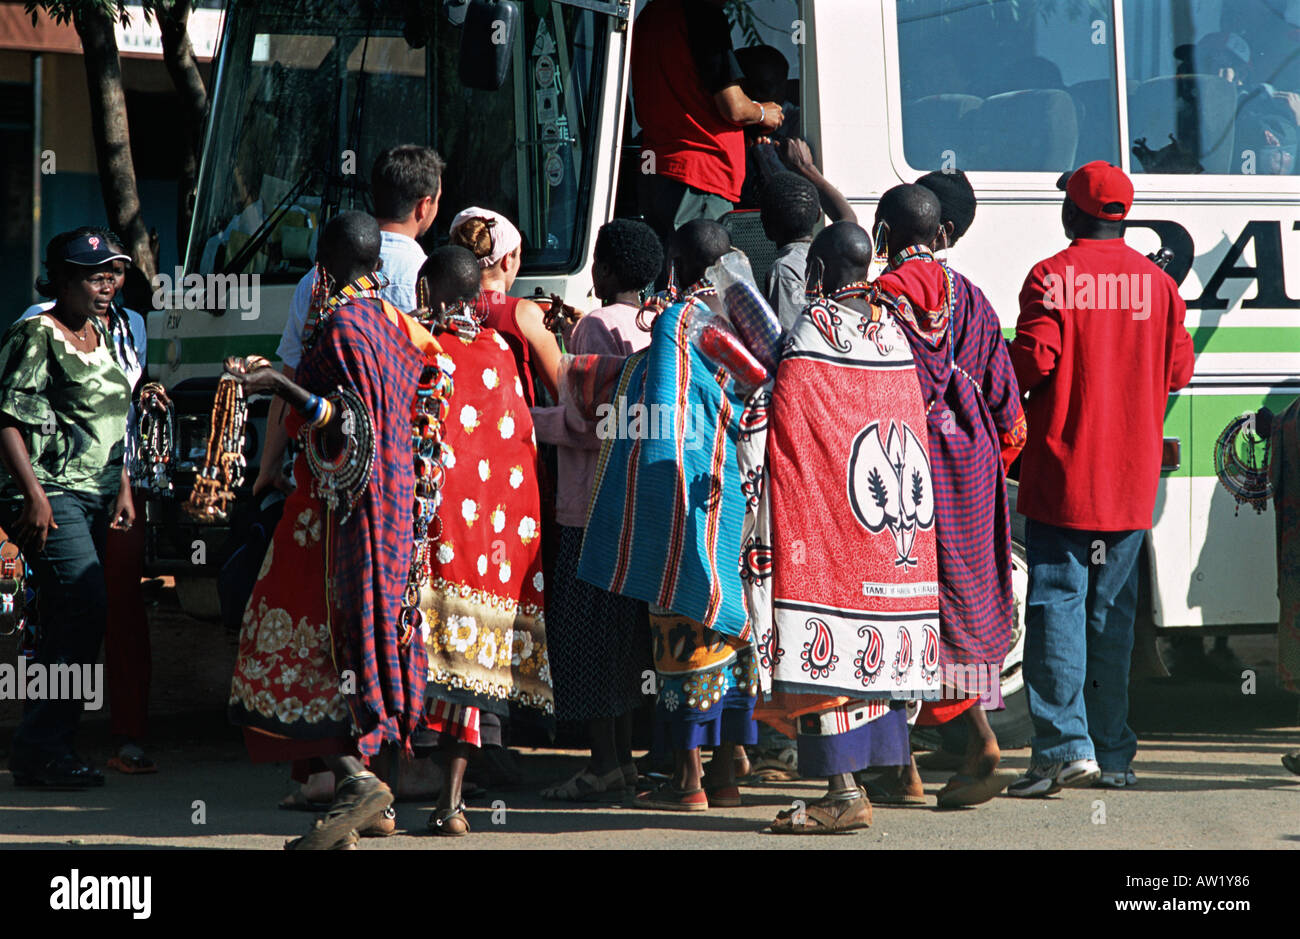 Mujeres masai de Kenya que venden recuerdos que rodean la puerta frontal de un autobús que transportaba a la gente a través de la frontera Namanga Tanzania Foto de stock